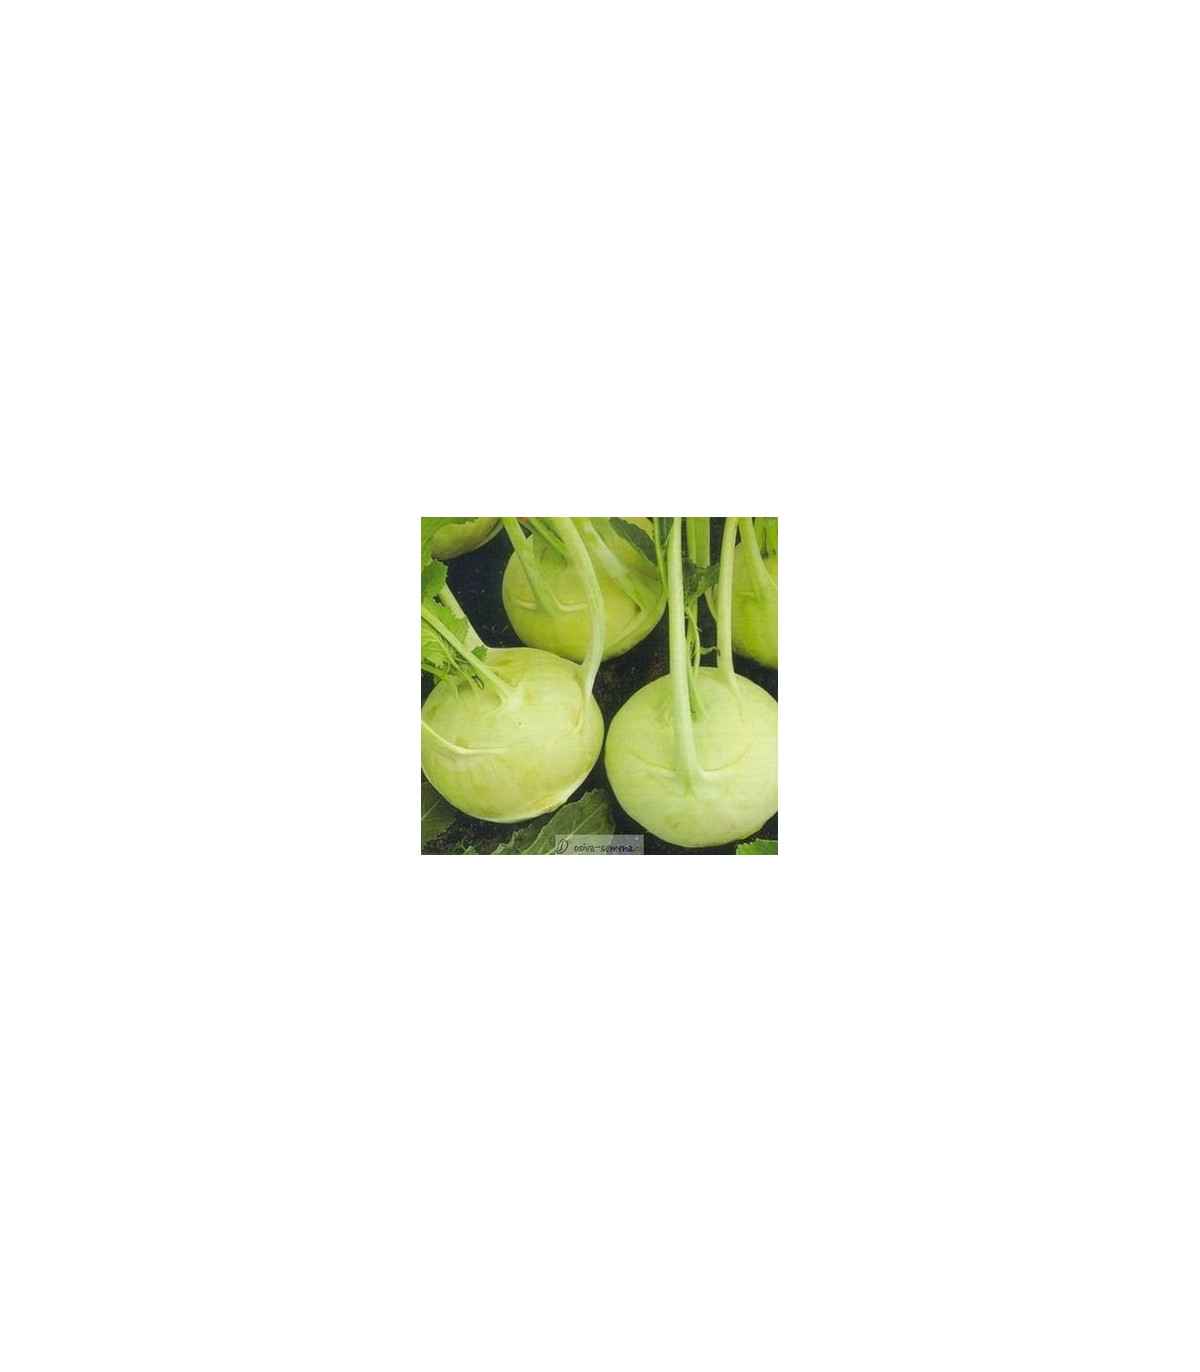 Kaleráb extra jemný - Brassica oleracea - semená kalerábu - 50 ks